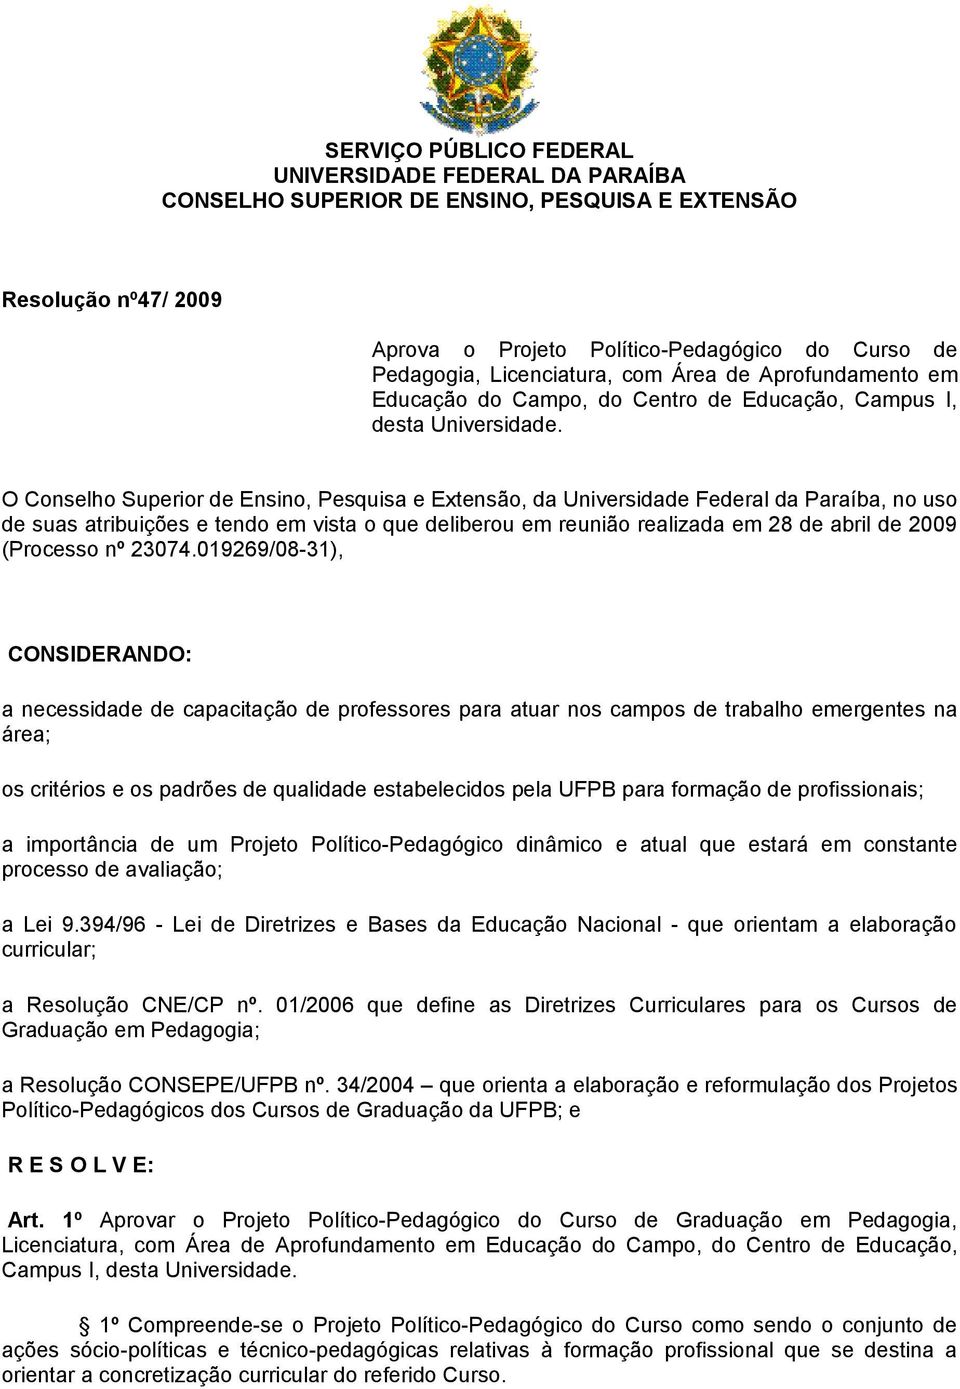 O Conselho Superior de Ensino, Pesquisa e Extensão, da Universidade Federal da Paraíba, no uso de suas atribuições e tendo em vista o que deliberou em reunião realizada em 28 de abril de 2009